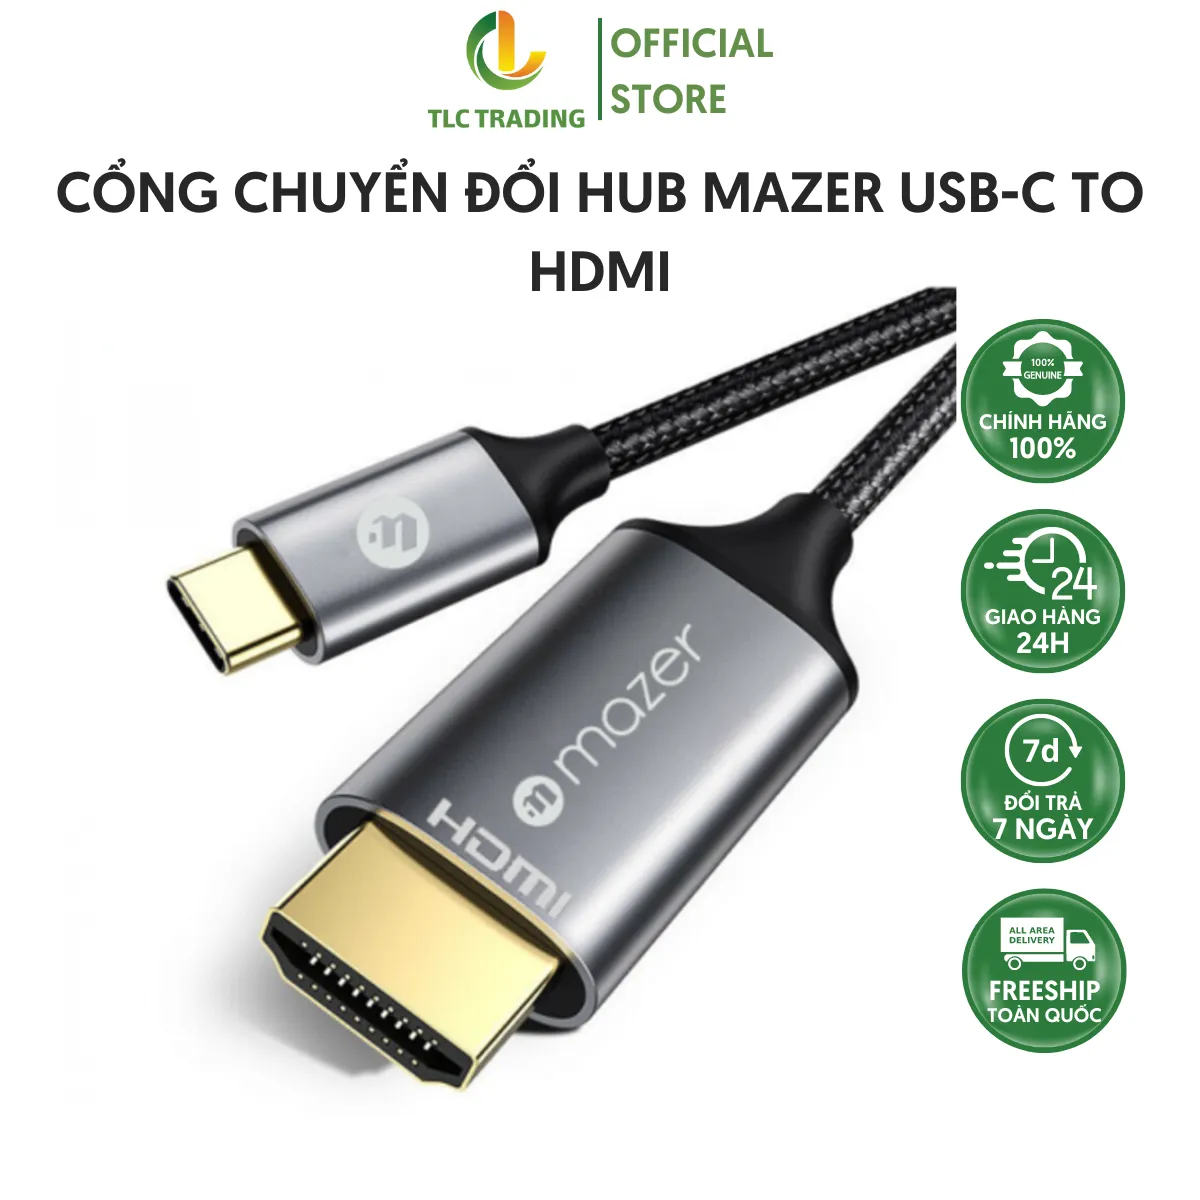 Mazer USB-C to HDMI Hub: Kết nối hàng loạt thiết bị kỹ thuật số một cách dễ dàng với Mazer USB-C to HDMI Hub. Thiết bị này cung cấp nhiều cổng kết nối đa dạng cho phép bạn kết nối và truyền tải hình ảnh và âm thanh 4K chất lượng cao đến các thiết bị khác nhau. Hãy xem hình ảnh để hiểu thêm về sự tiện ích và đáng tin cậy của nó.